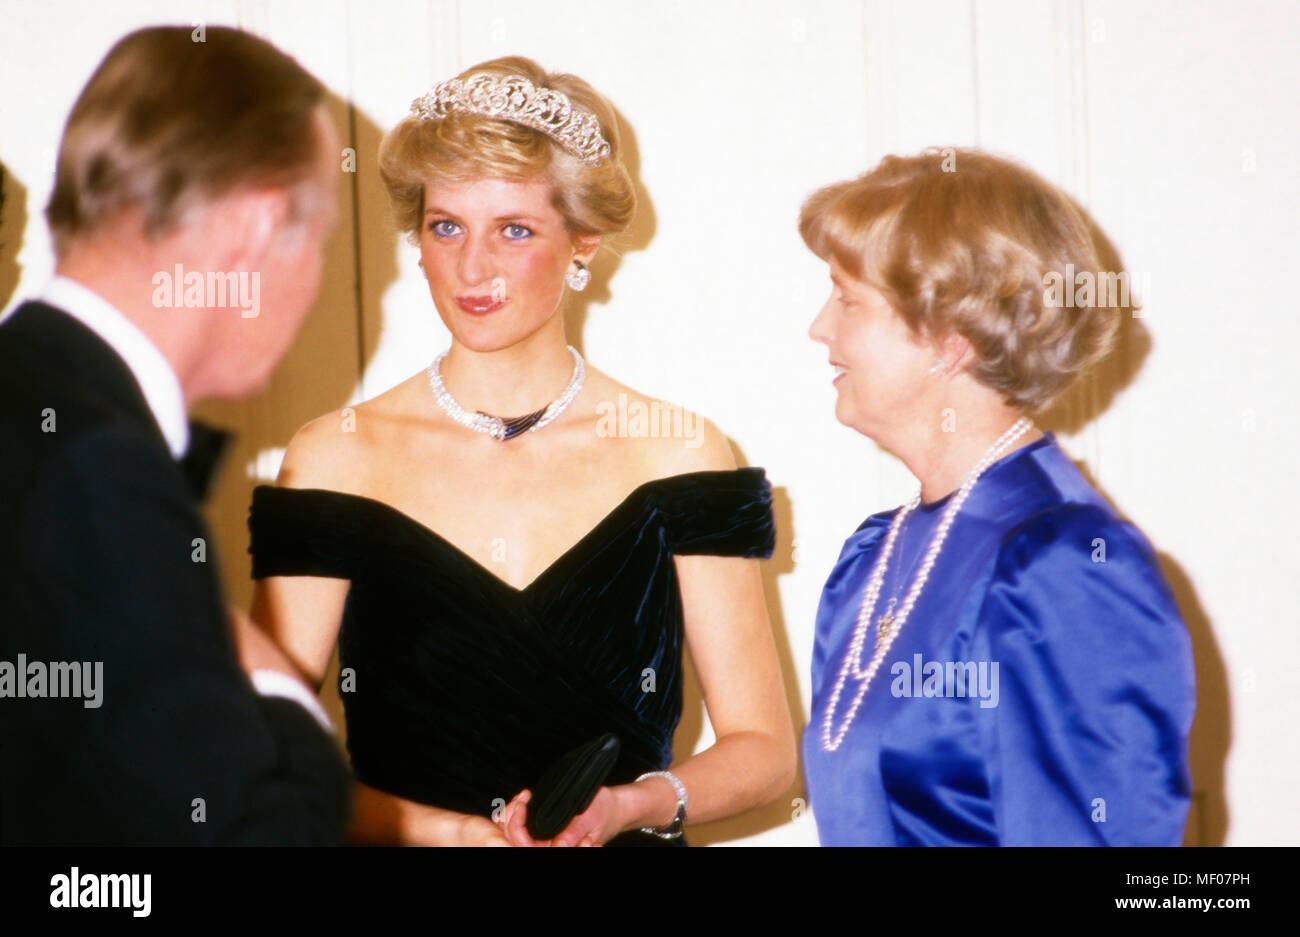 Prinz Charles und Prinzessin Diana zu Besuch in Deutschland, hier beim Abendempfang mit Marianne von Weizsäcker, 1987. Prince and Princess of Wales visiting Germany, here at an evening event with Marianne von Weizsaecker, 1987. Stock Photo